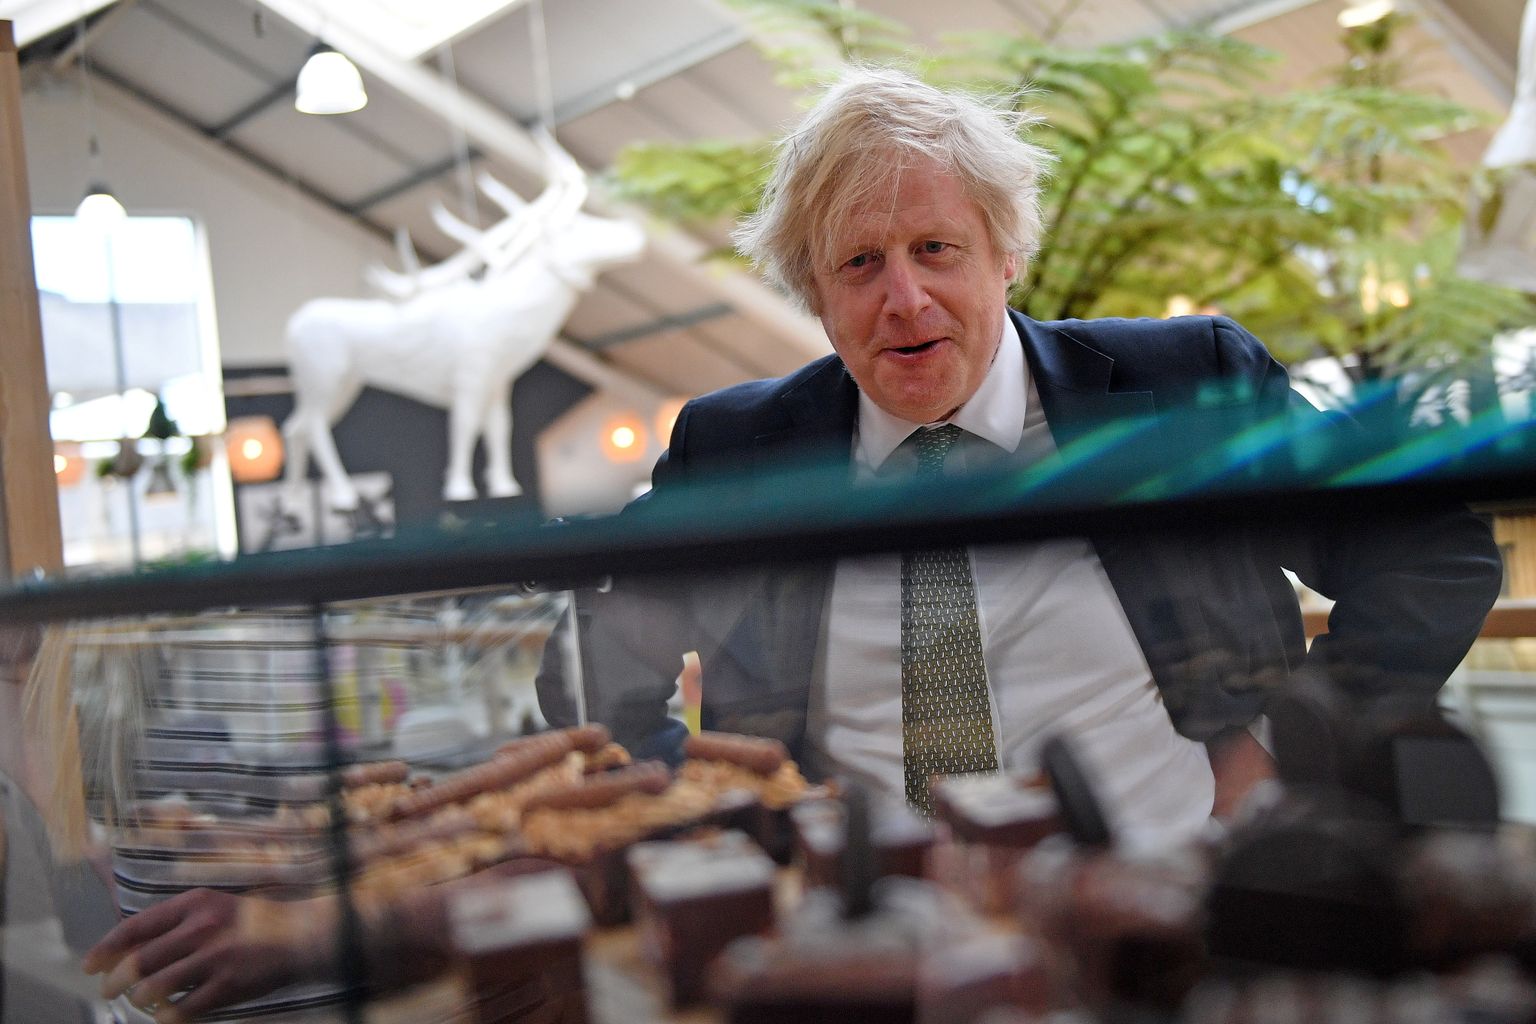 Ühendkuningriigi peaminister Boris Johnson mullu aprillis Cornwallis koogileti ääres. 2020. aasta juunis lukustusmeetmete aegu tähistas tema personal koogiga Johnsoni sünnipäeva, kuigi siseruumides oli lubatud koguneda vaid kahel inimesel.